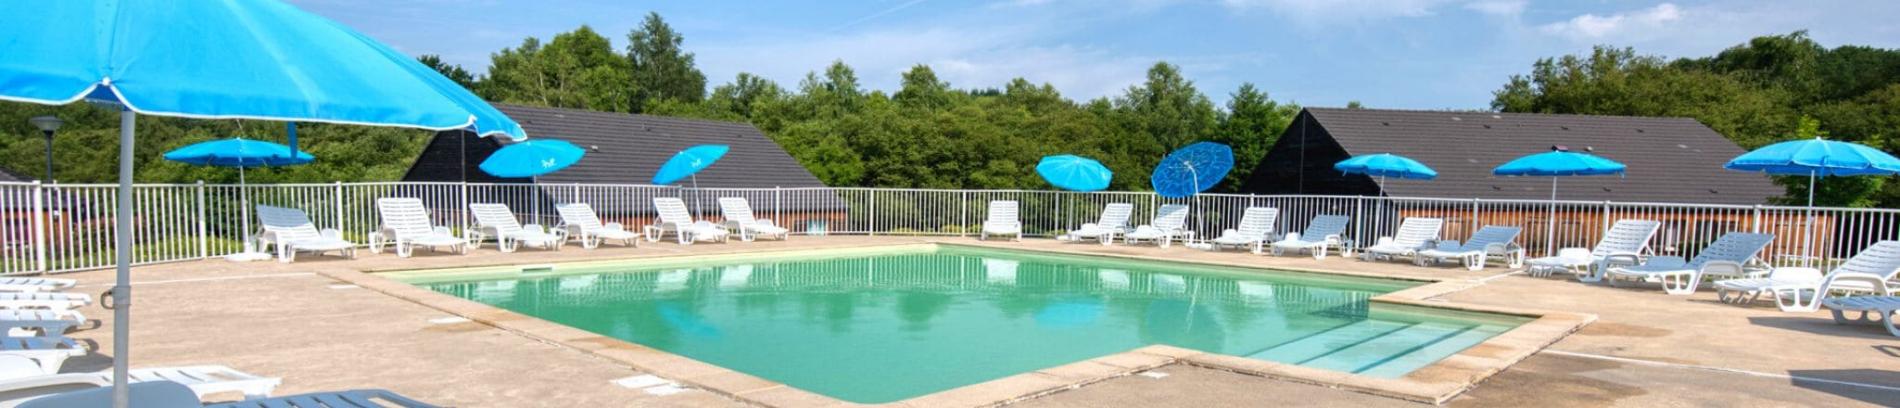 Slide Résidence Le Domaine du Bosquet à Égletons - Grande piscine extérieure